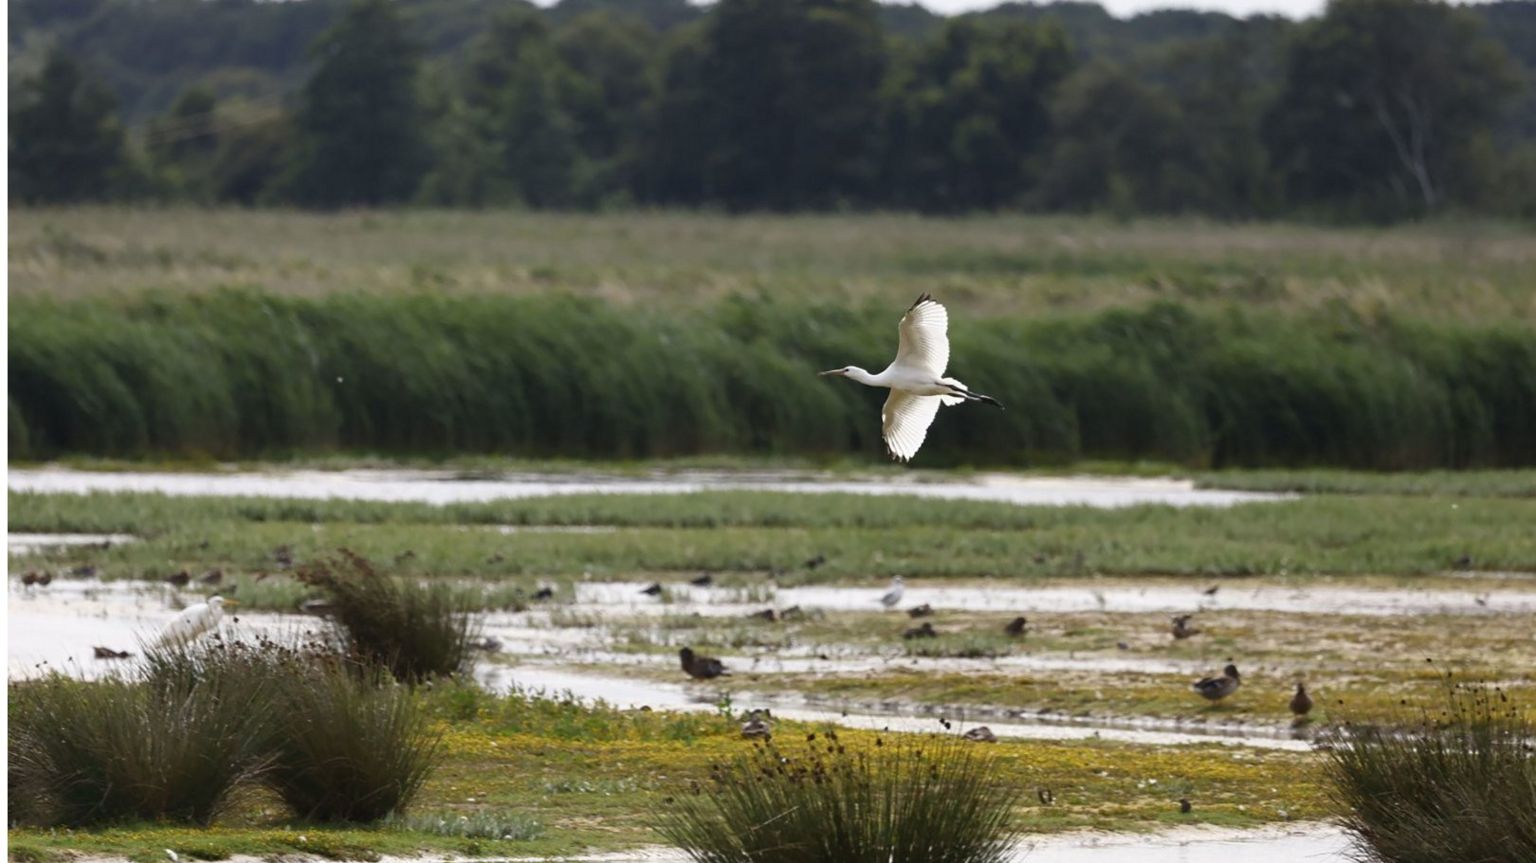 A stalk soars across a wetland habitat